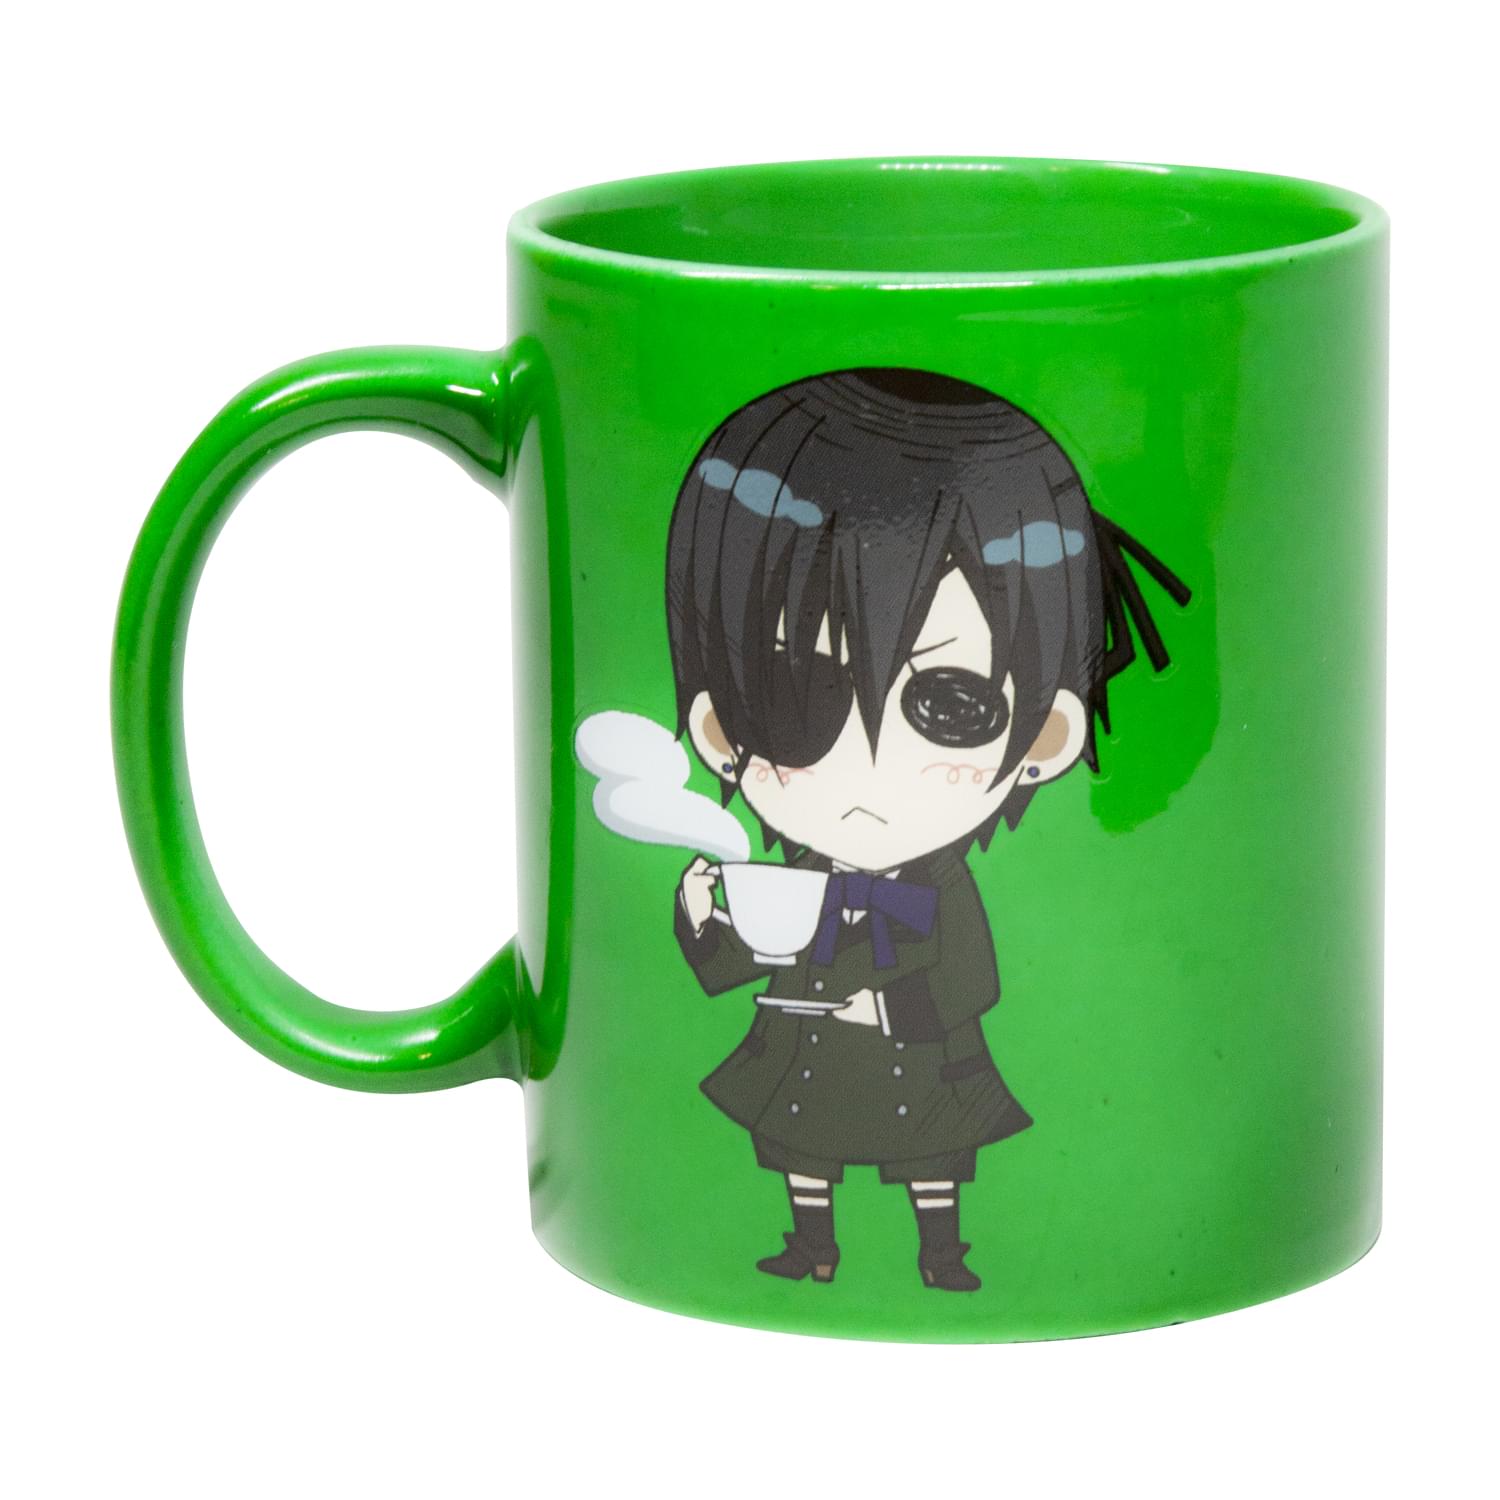 Photos - Mug / Cup Black Butler Collectibles | Green Coffee Mug with Black Logo SRE-BB-CIEL-C